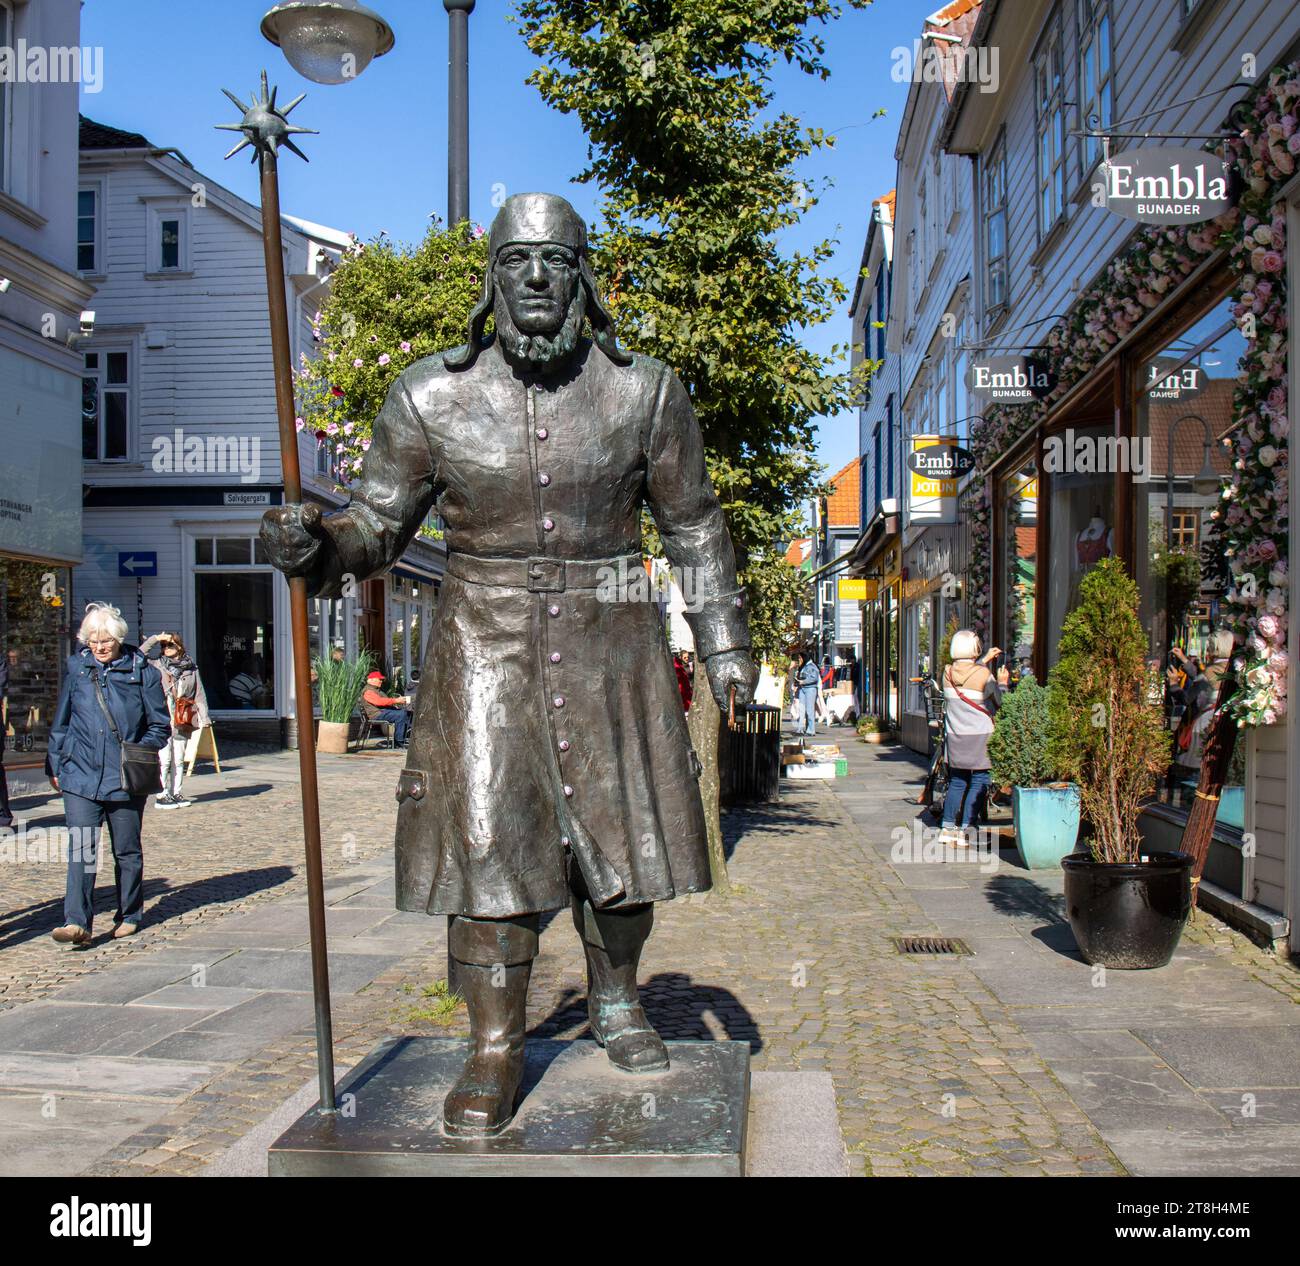 Escultura de un vikingo en una calle comercial del centro histórico de Stavanger, Noruega Stock Photo